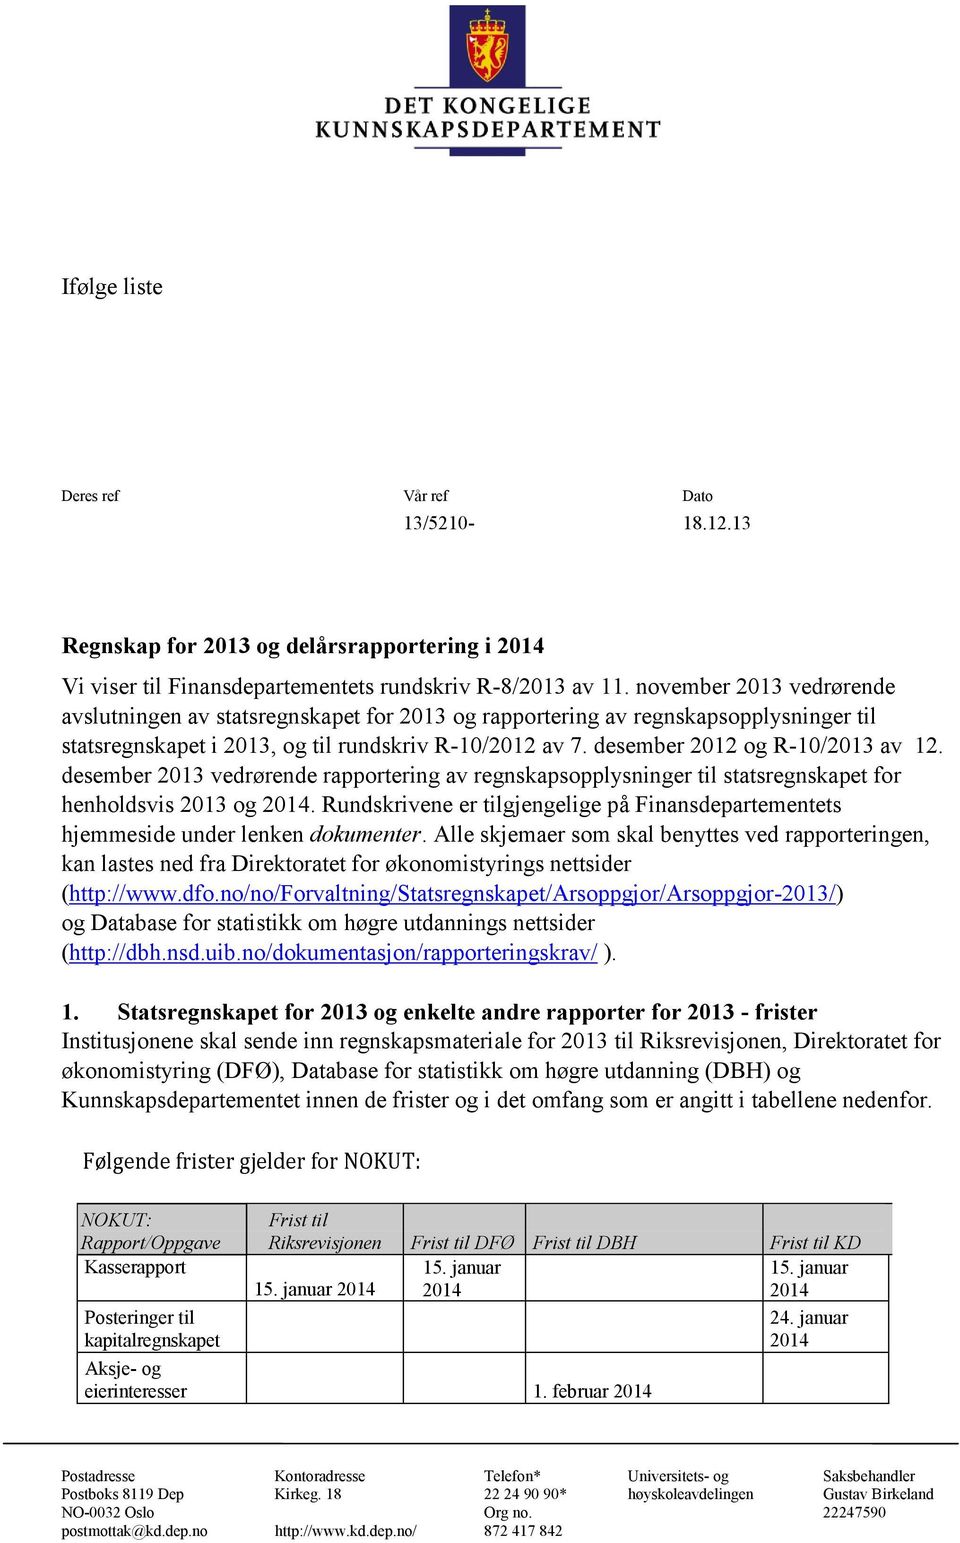 desember 2012 og R-10/2013 av 12. desember 2013 vedrørende rapportering av regnskapsopplysninger til statsregnskapet for henholdsvis 2013 og 2014.